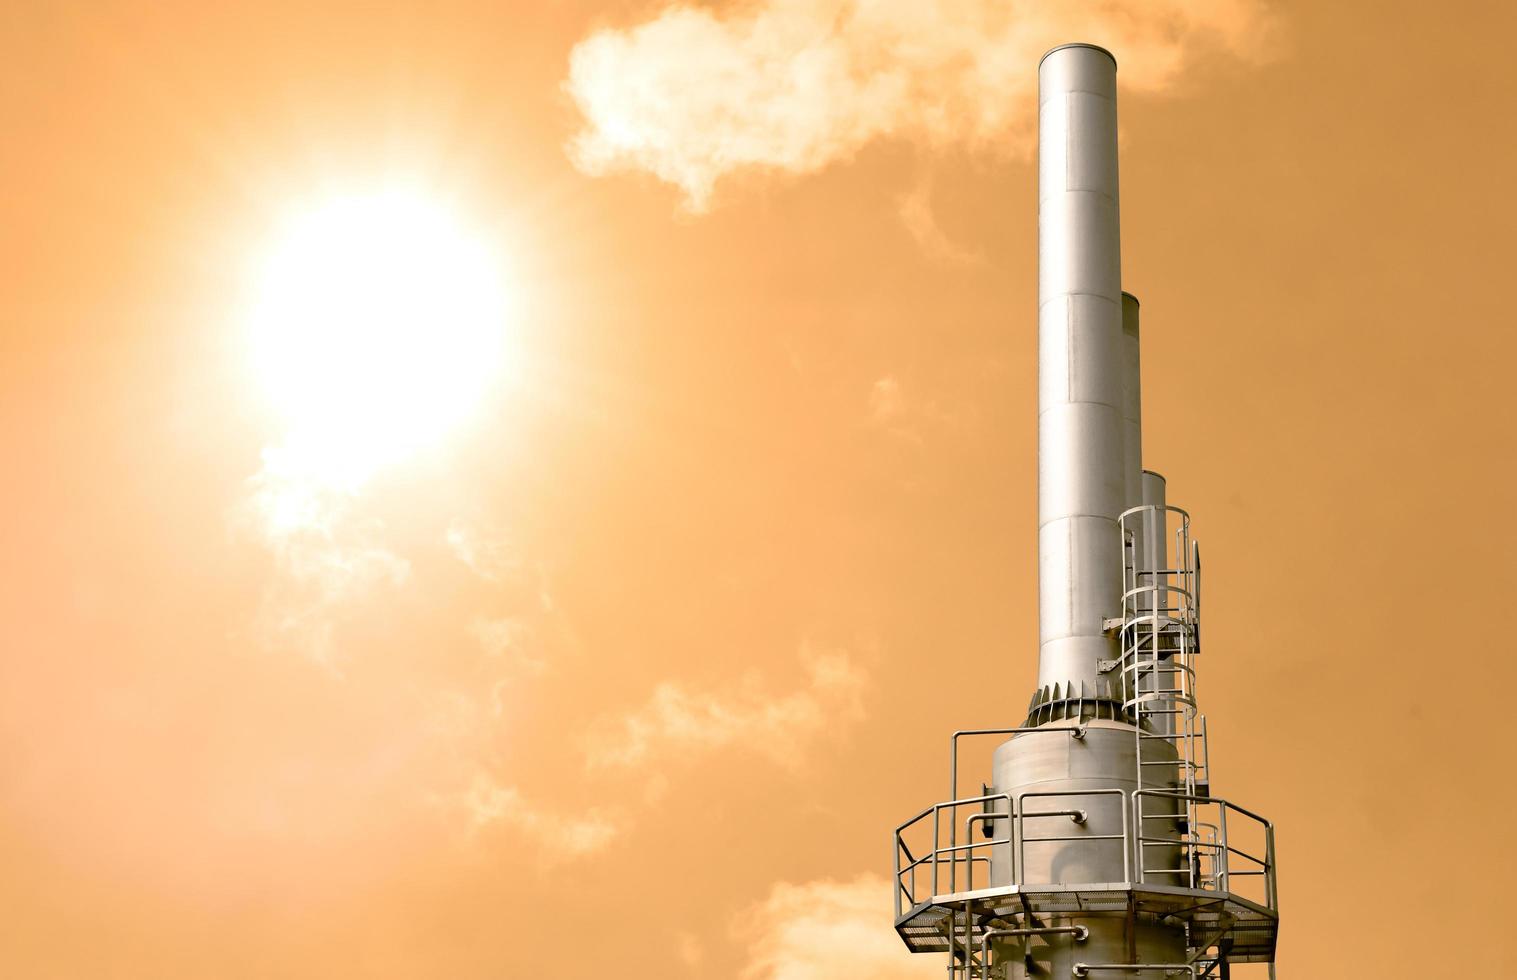 poluição do conceito de aquecimento global na atmosfera da planta industrial chaminé no céu amarelo foto